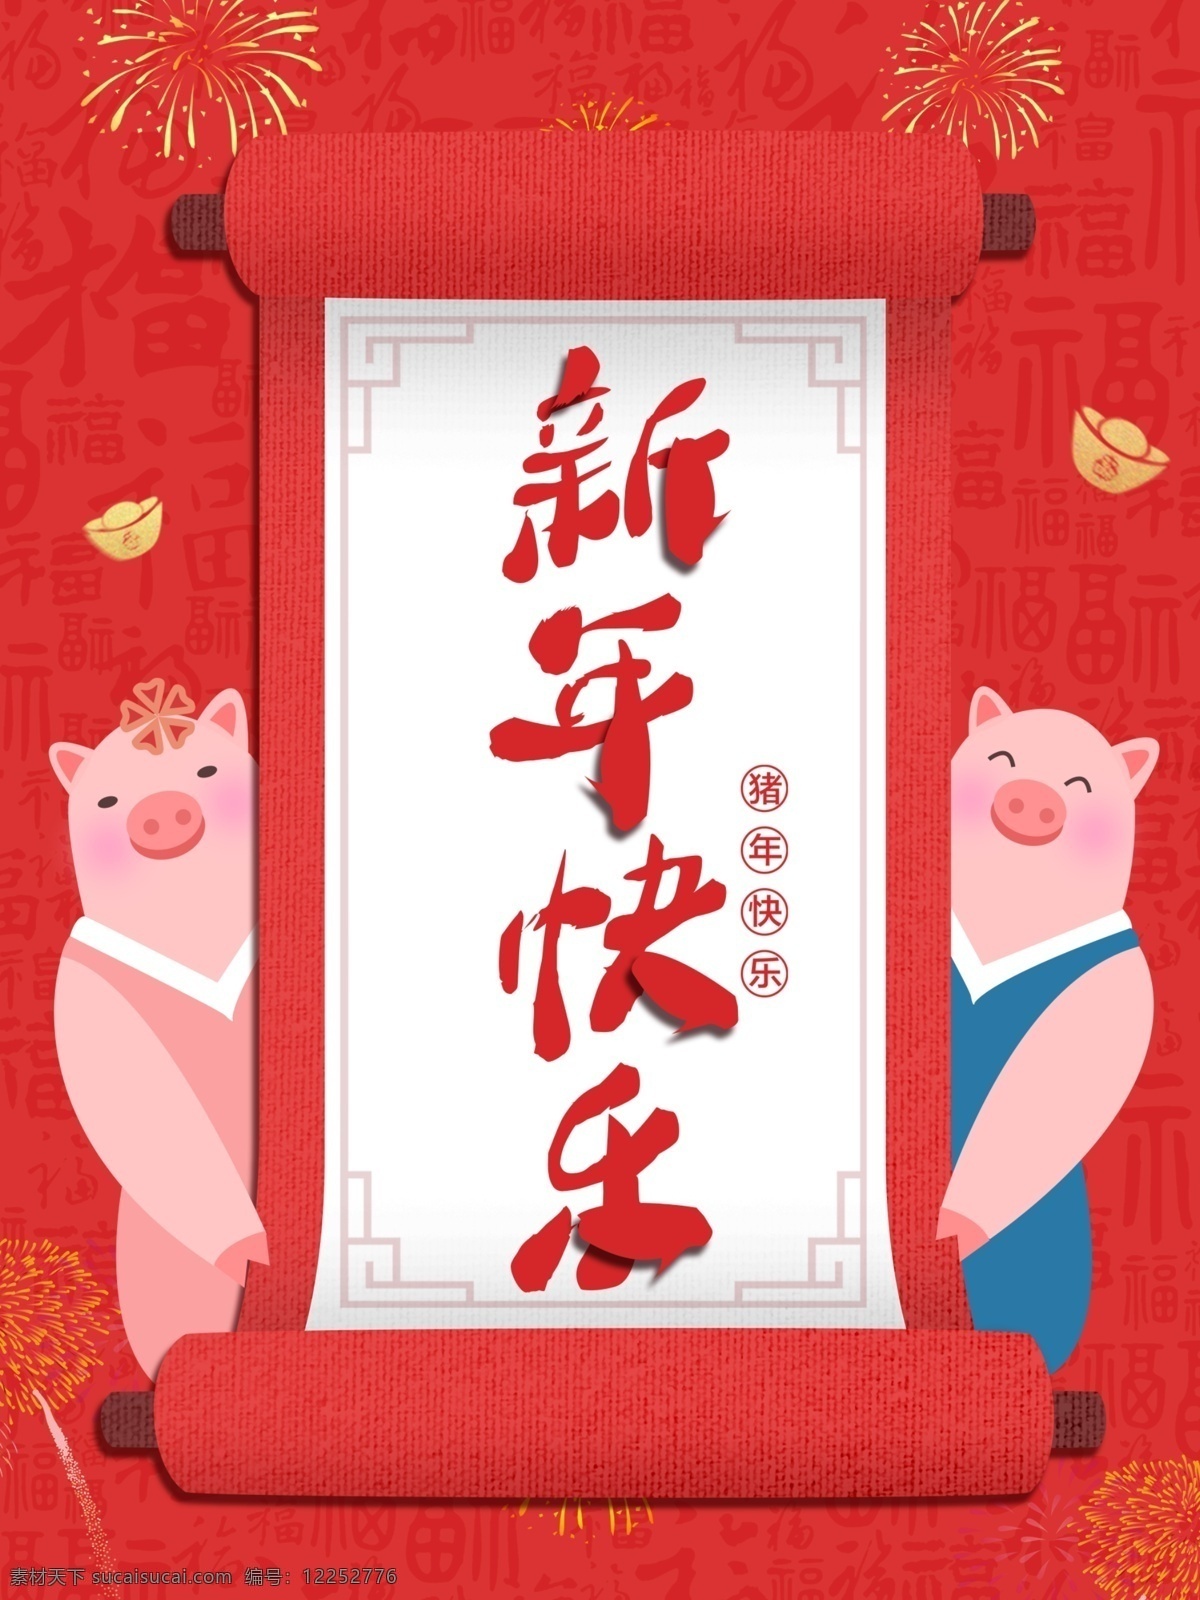 2019 新年 海报 猪年 祝福语 快乐 金猪送福 新年快乐 字体设计 猪年卡通 珊瑚红海报